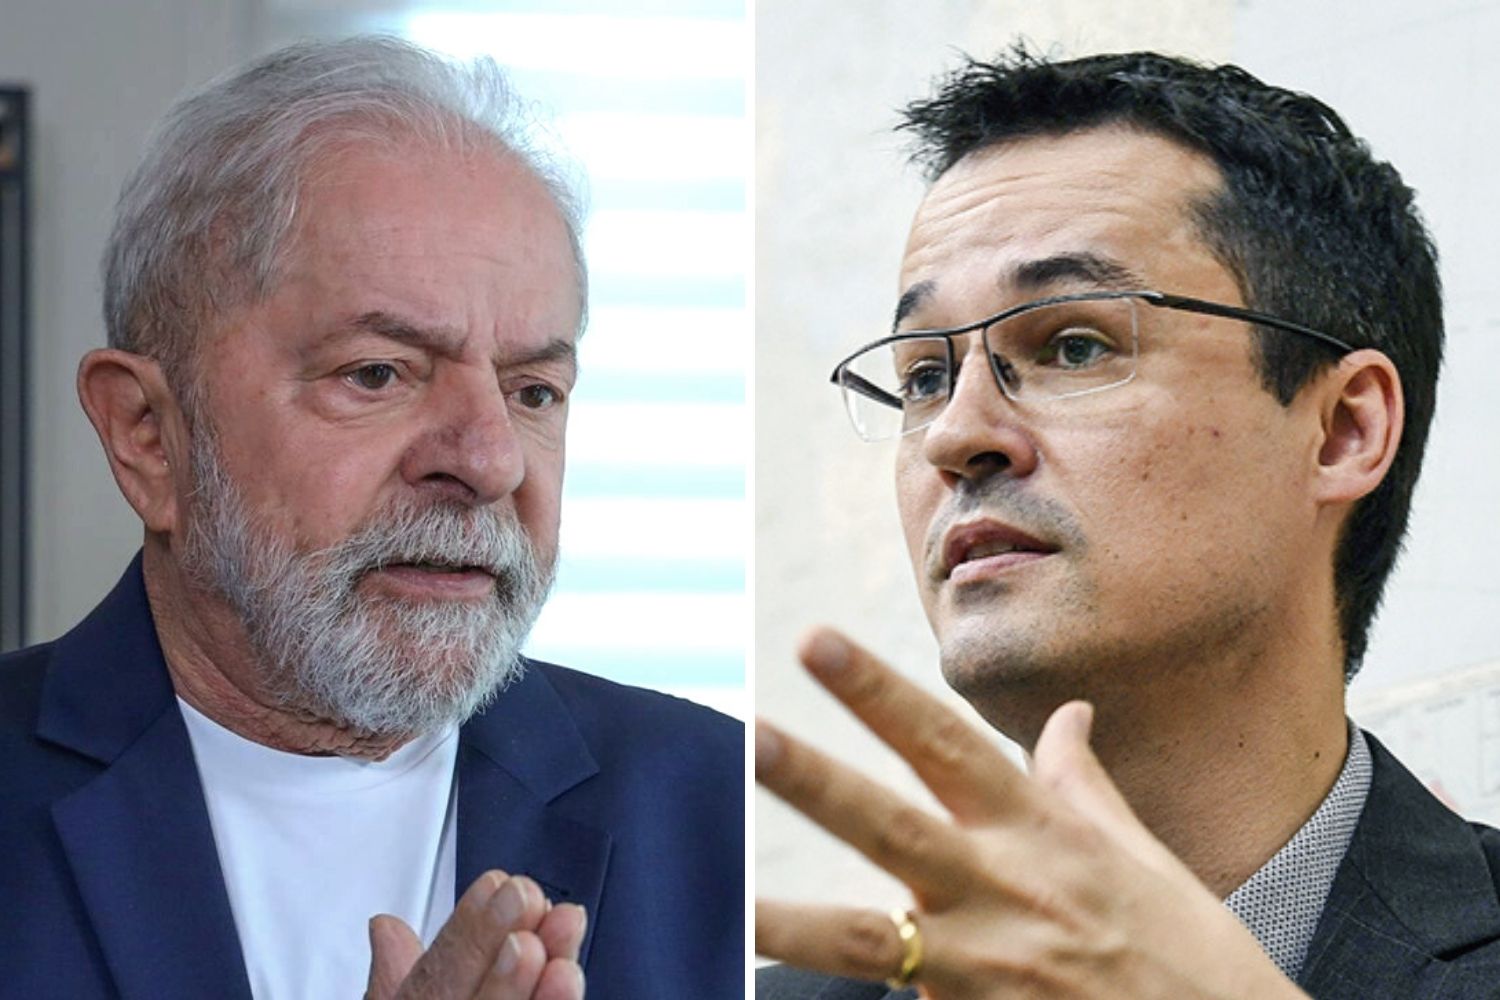 STJ condena Deltan Dallagnol a indenizar Lula no caso do PowerPoint | VEJA